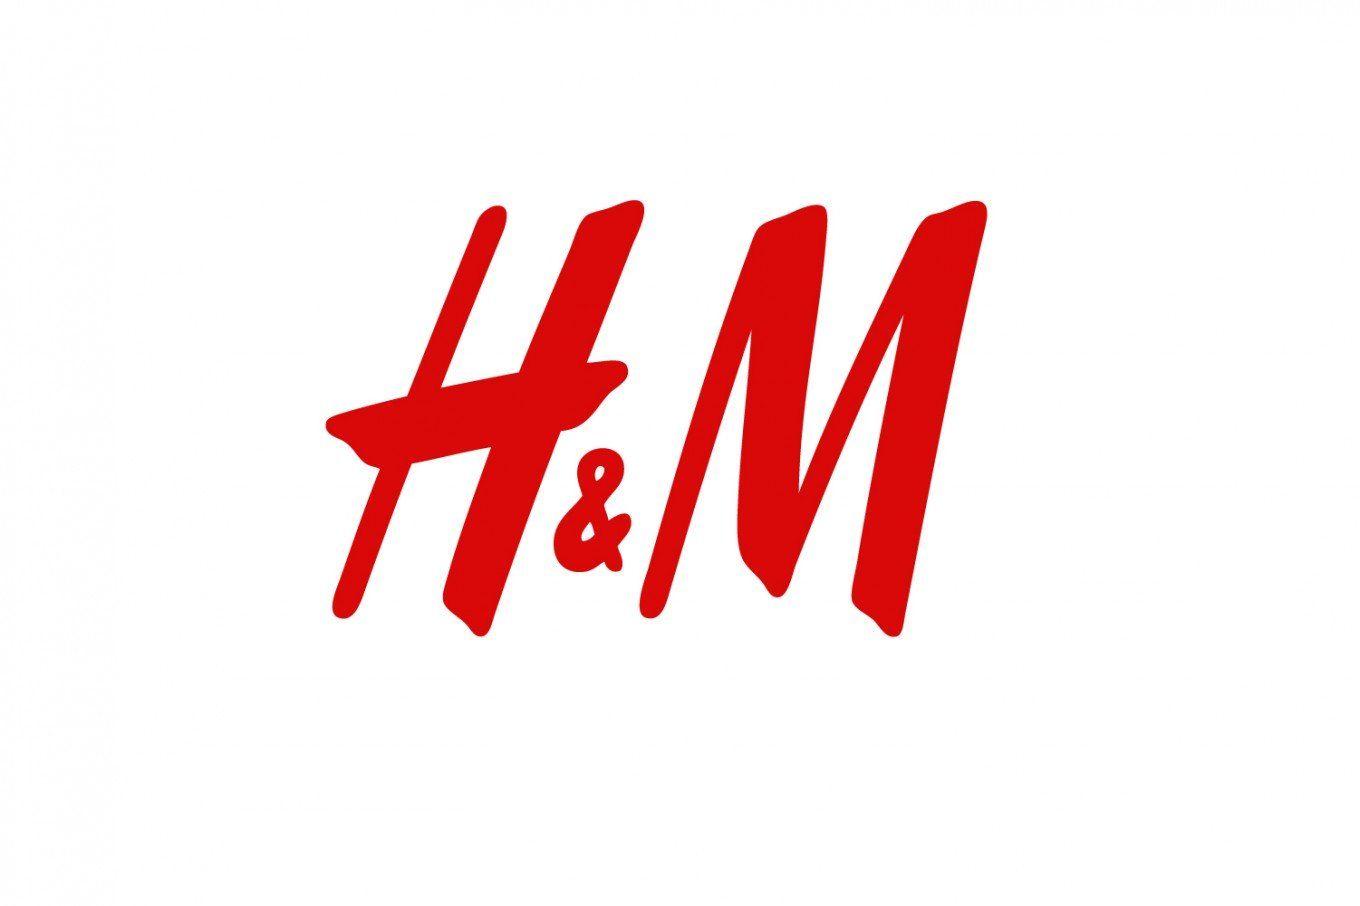 Helvetica Logo - Helvetica Dominates Logo Design | DesignContest